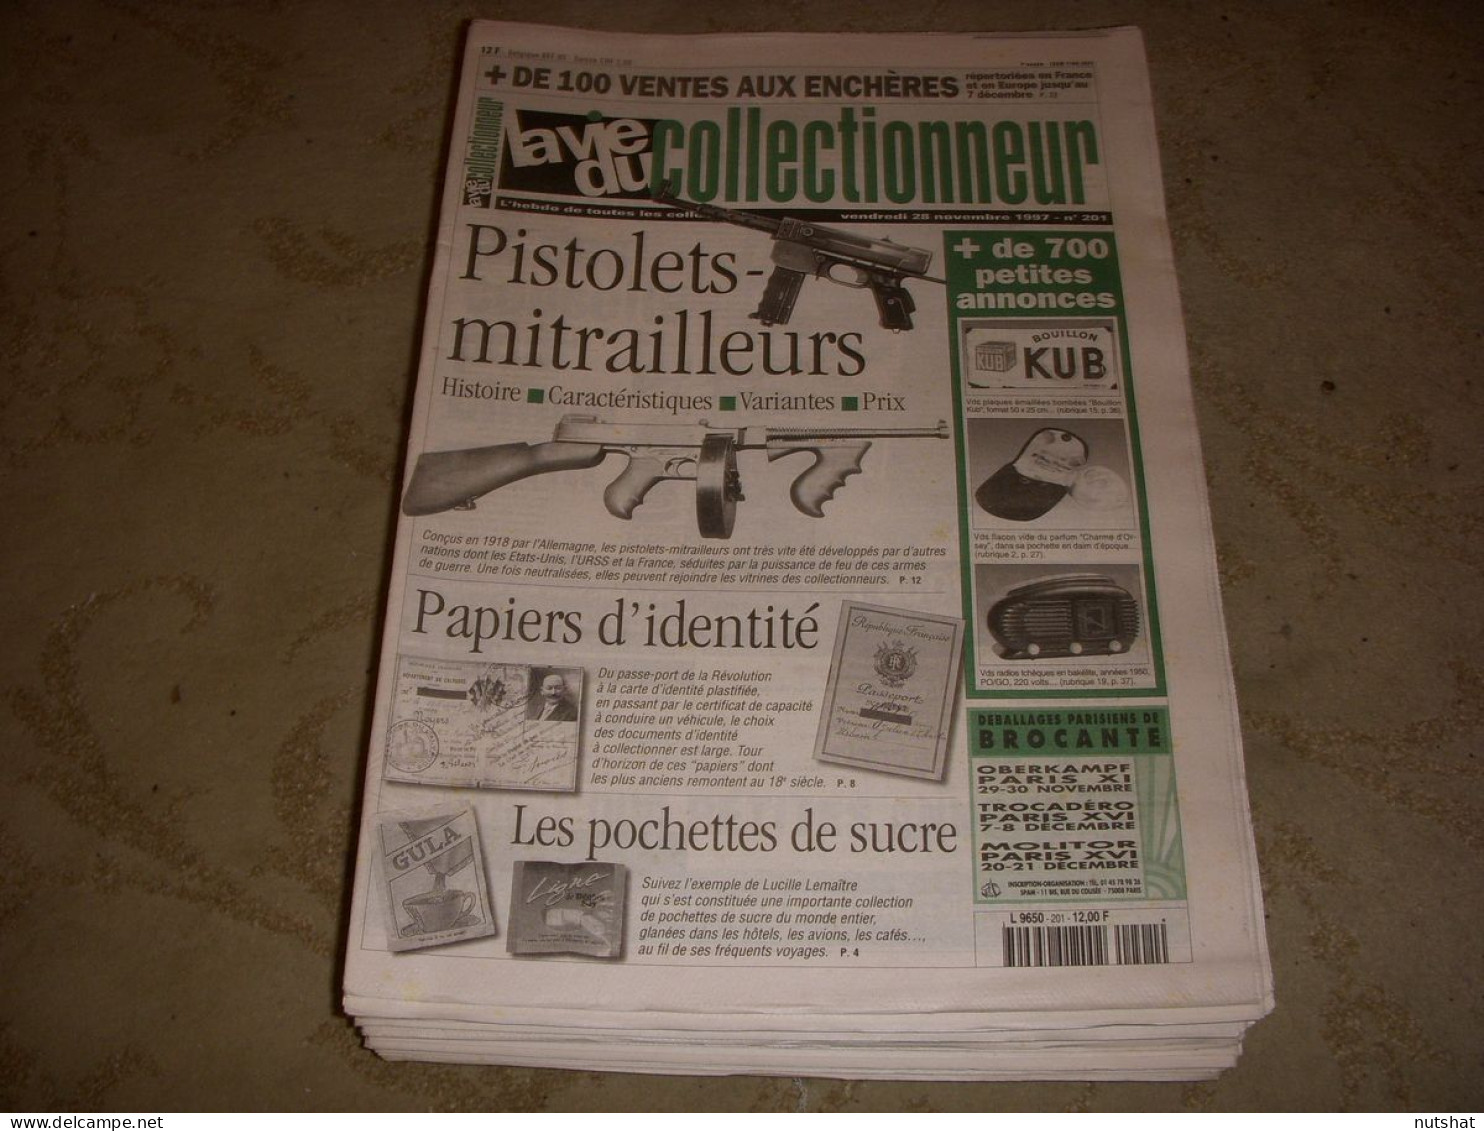 LVC VIE Du COLLECTIONNEUR 201 28.11.1997 PISTOLET MITRAILLEURS POCHETTE SUCRE  - Collectors